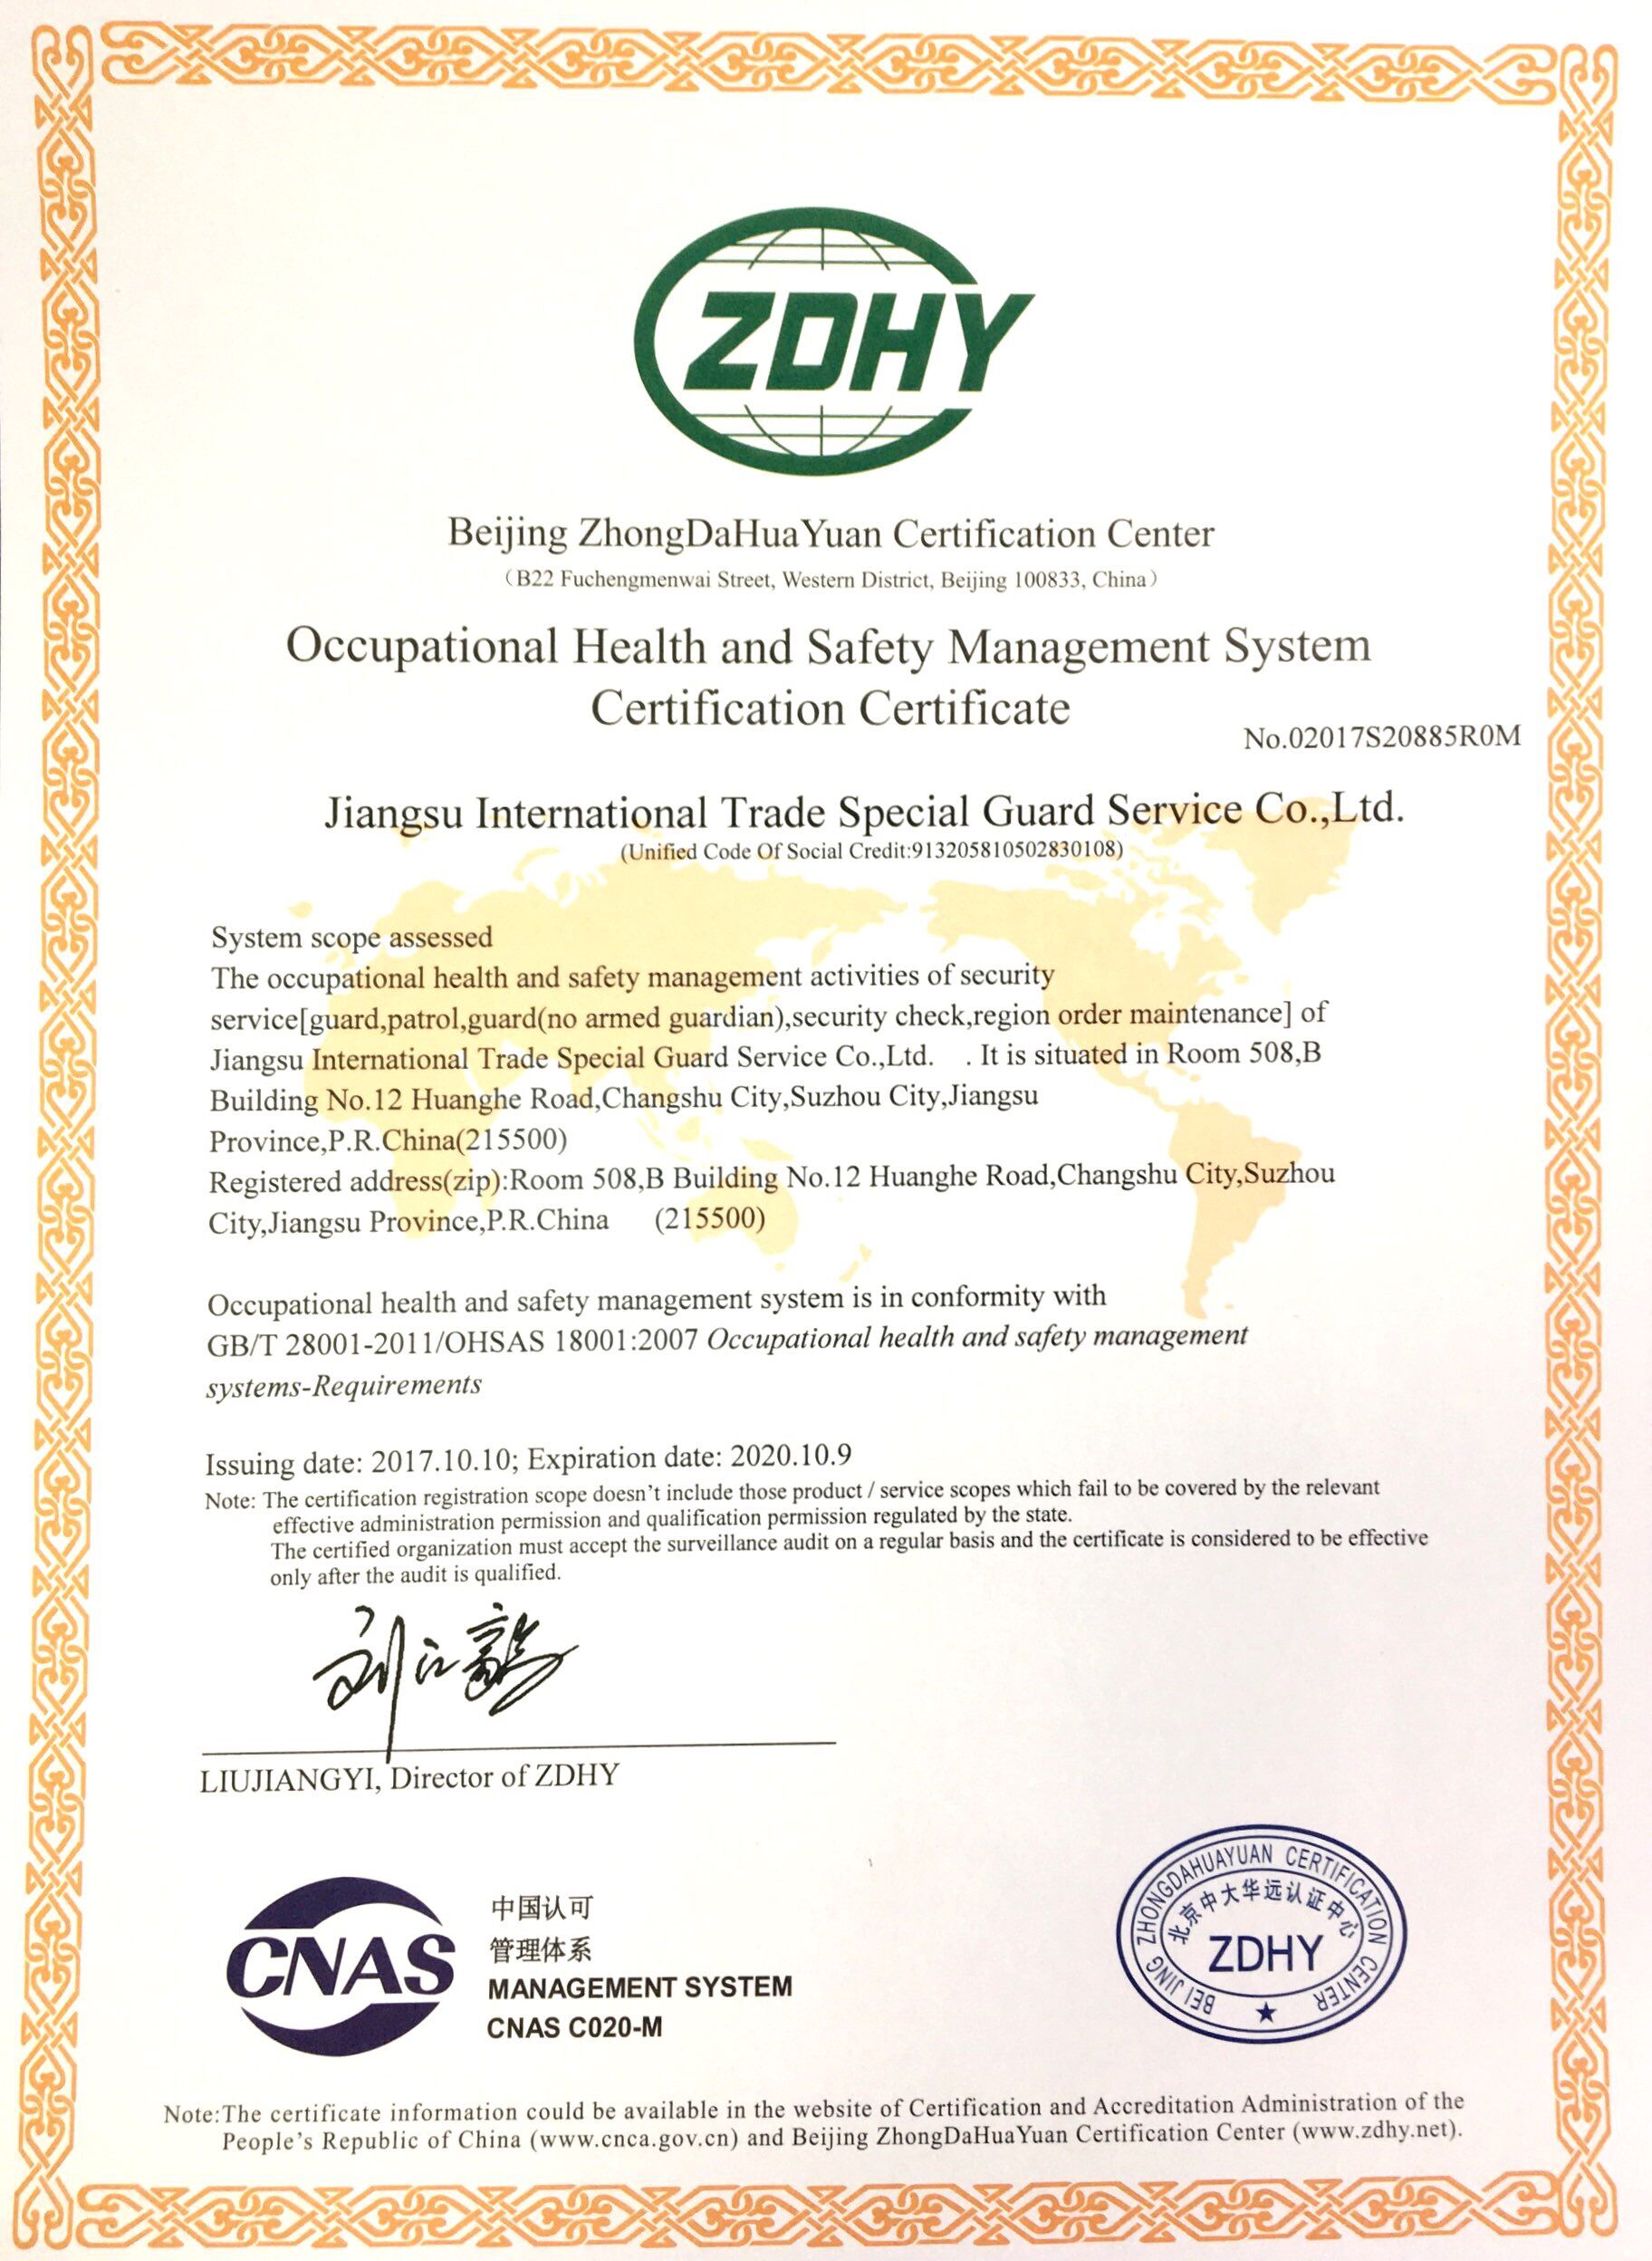 体系认证证书 ISO18001职业健康安全管理（英文）